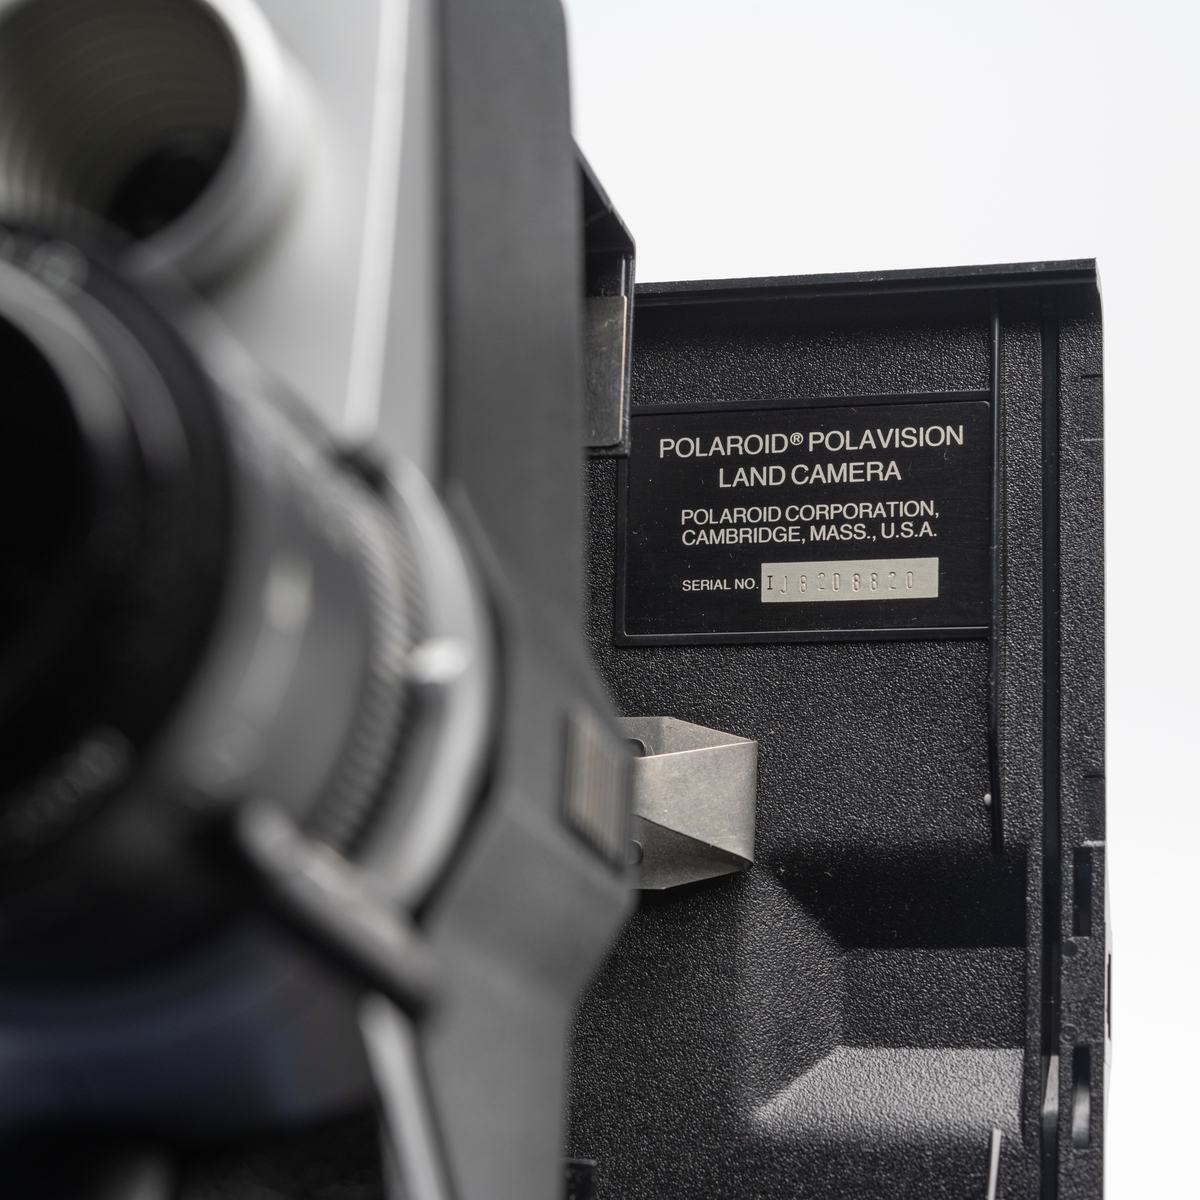 Batteridrevet Super 8 instant filmkamera. Polaroid filmkasettene holdt 2 min. og 40 sek. film. Filmen ble fremkalt til positiv i avspiller/fremkaller.
Polaroid f1.8/12.5-24mm manuell zoom objektiv. To fokusposisjoner 6`-15`, 15`- uendelig.